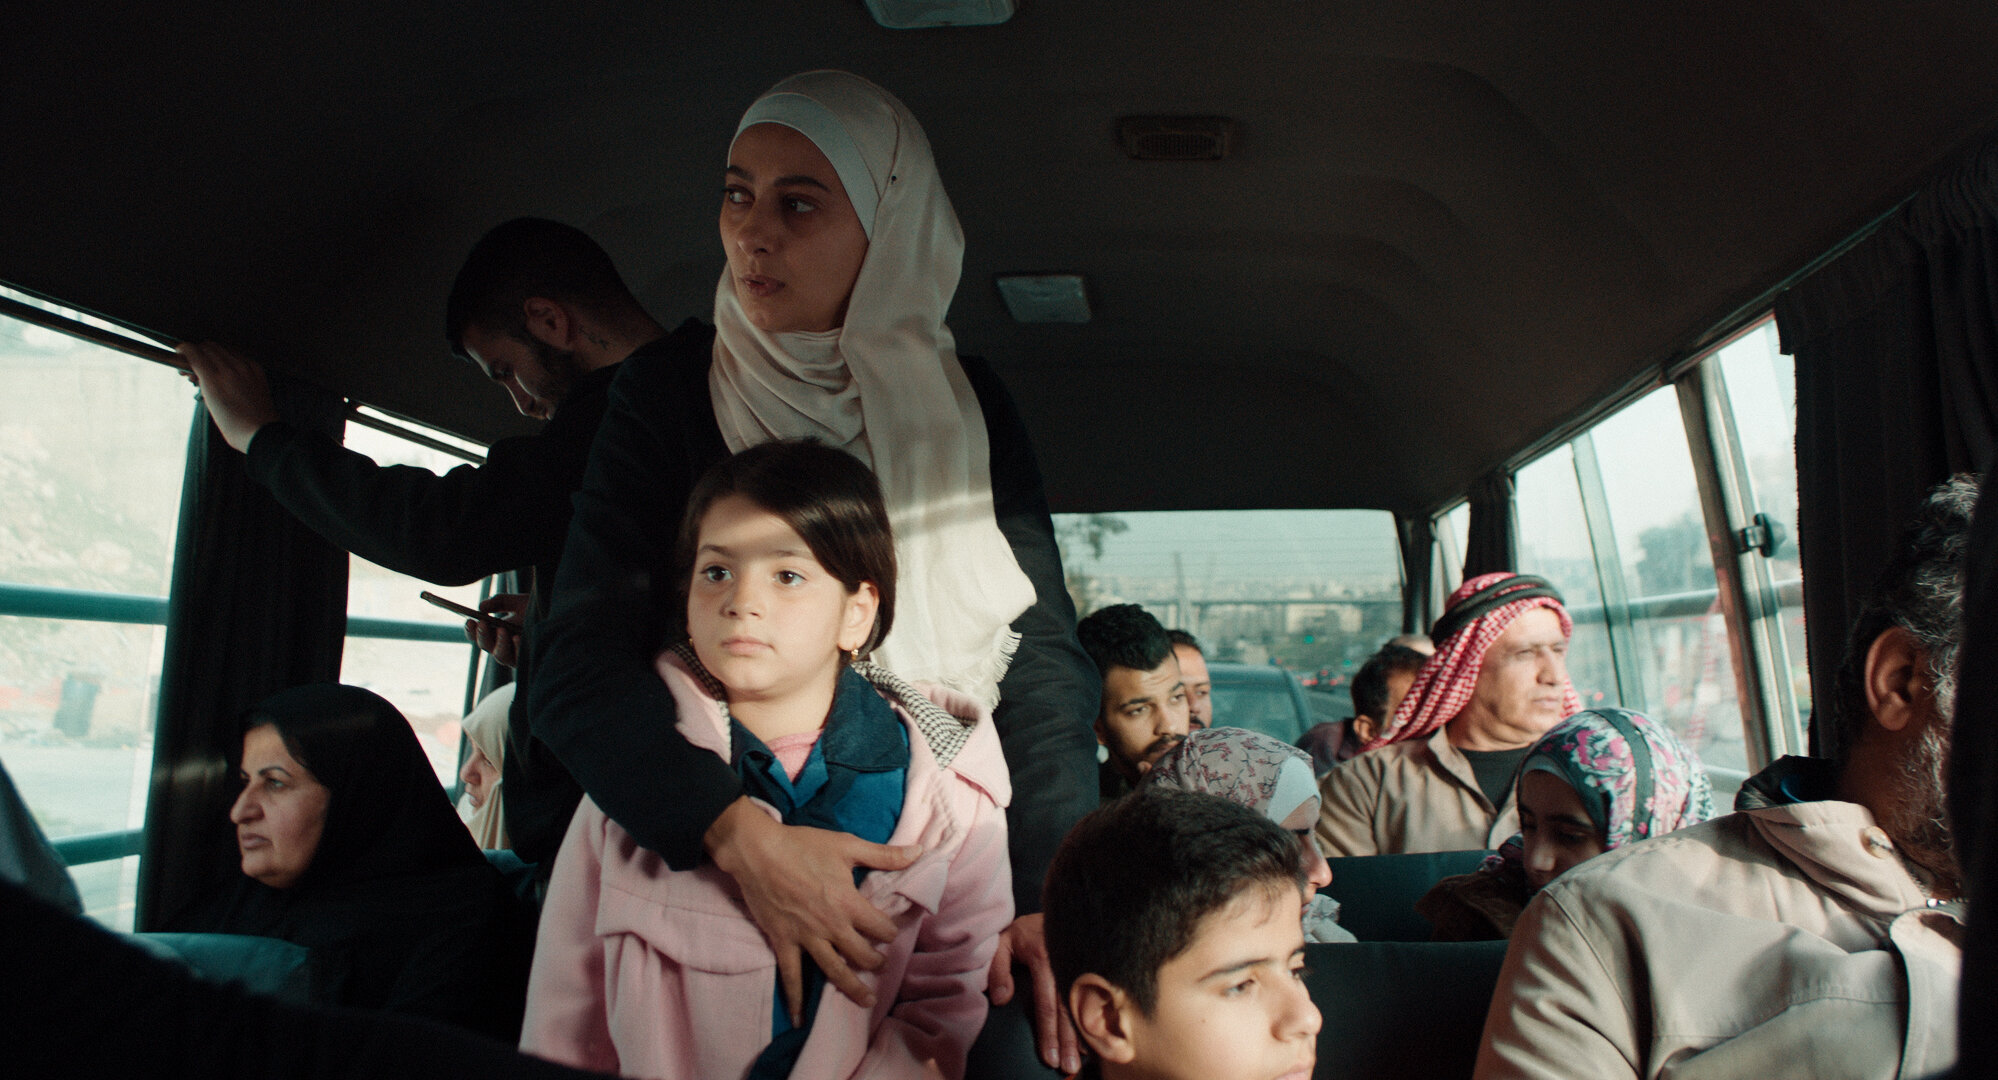 إن شاءالله ولد أفضل فيلم روائي طويل بمهرجان بيروت الدولي لسينما المرأة.